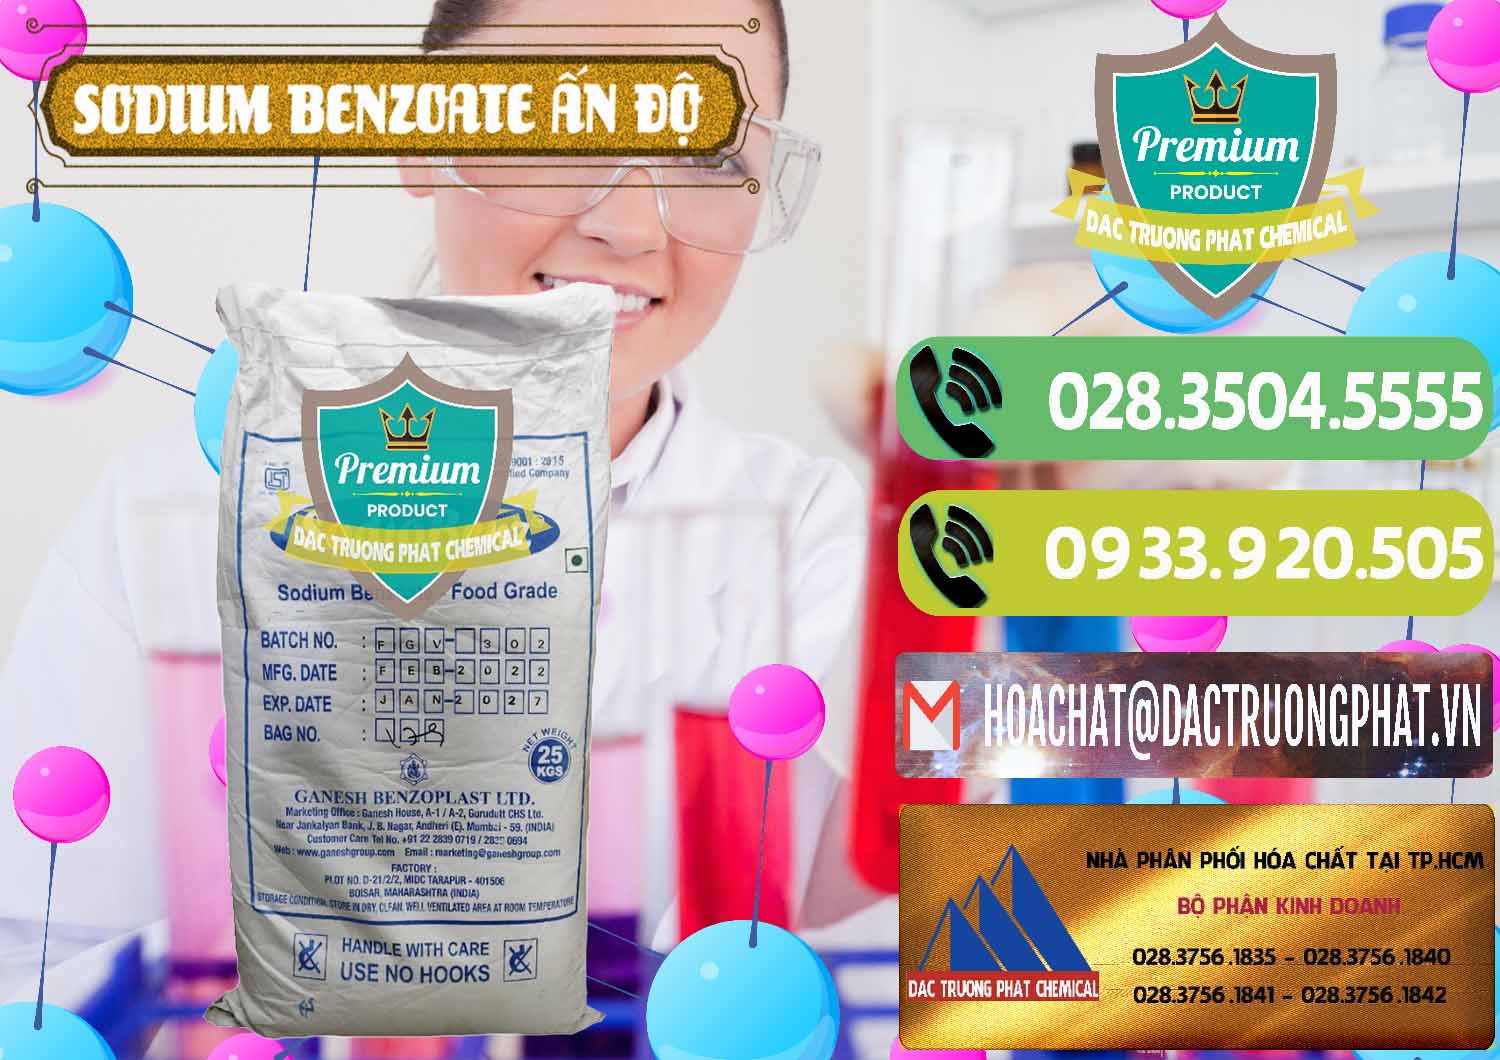 Đơn vị chuyên kinh doanh _ bán Sodium Benzoate - Mốc Bột Ấn Độ India - 0361 - Công ty chuyên phân phối ( bán ) hóa chất tại TP.HCM - hoachatmientay.vn